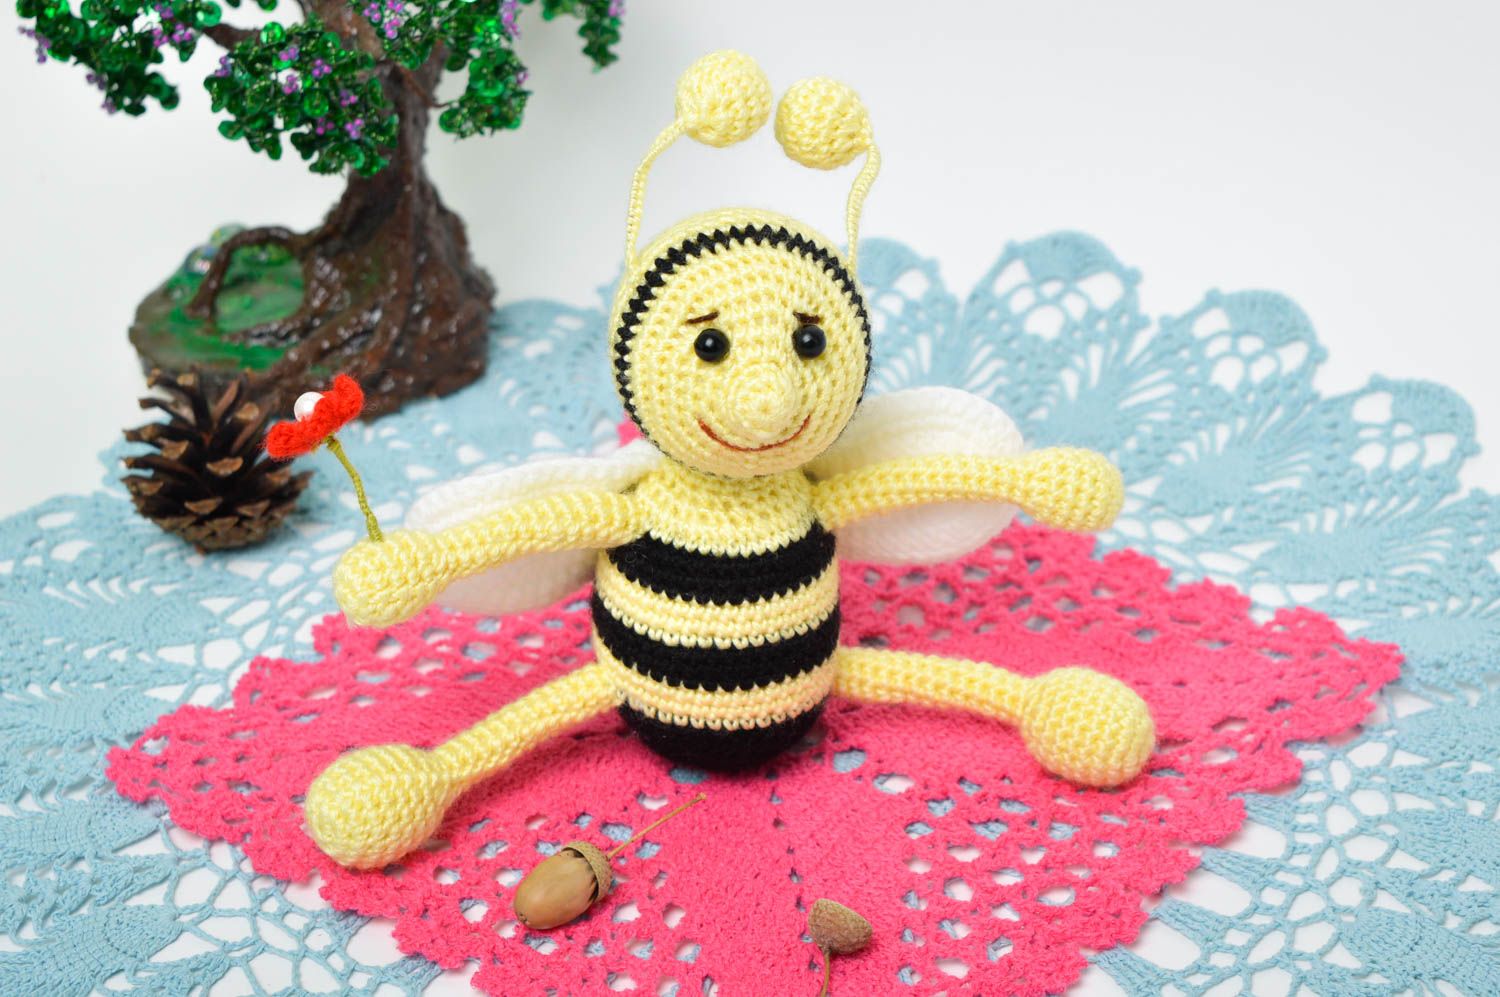 Мягкая игрушка ручной работы игрушка пчелка крючком игрушка авторская кукла фото 1